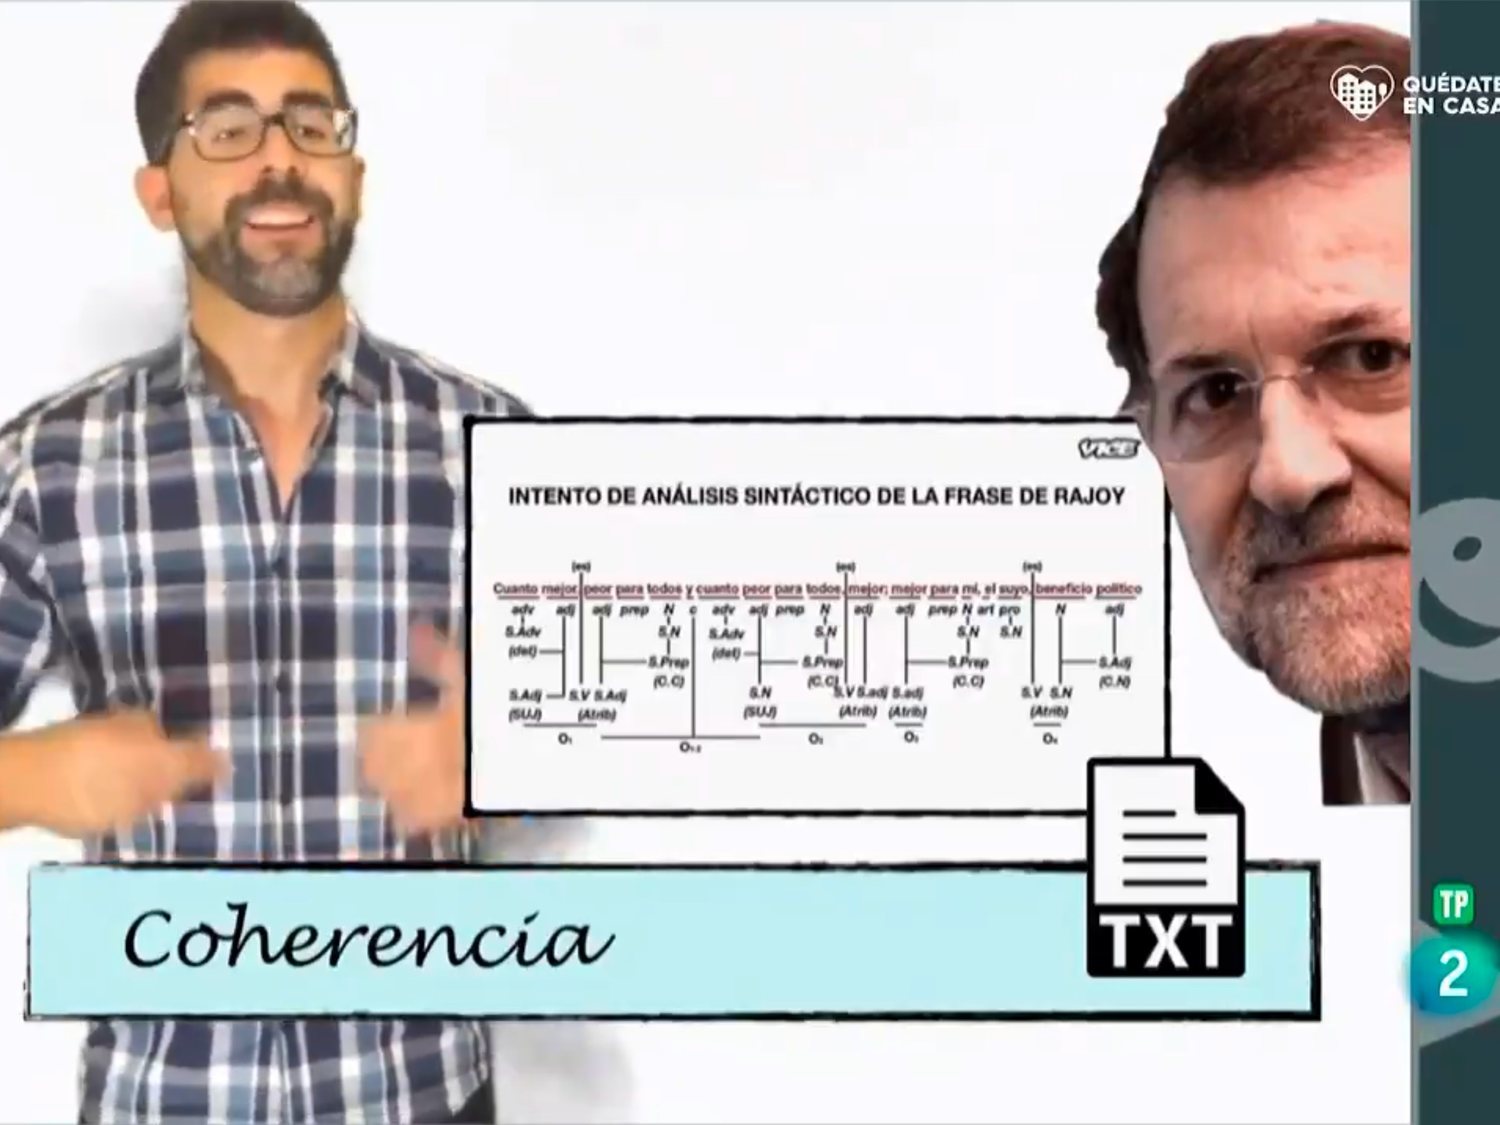 TVE roba un vídeo de Los Replicantes para ridiculizar a Rajoy por "error involuntario"